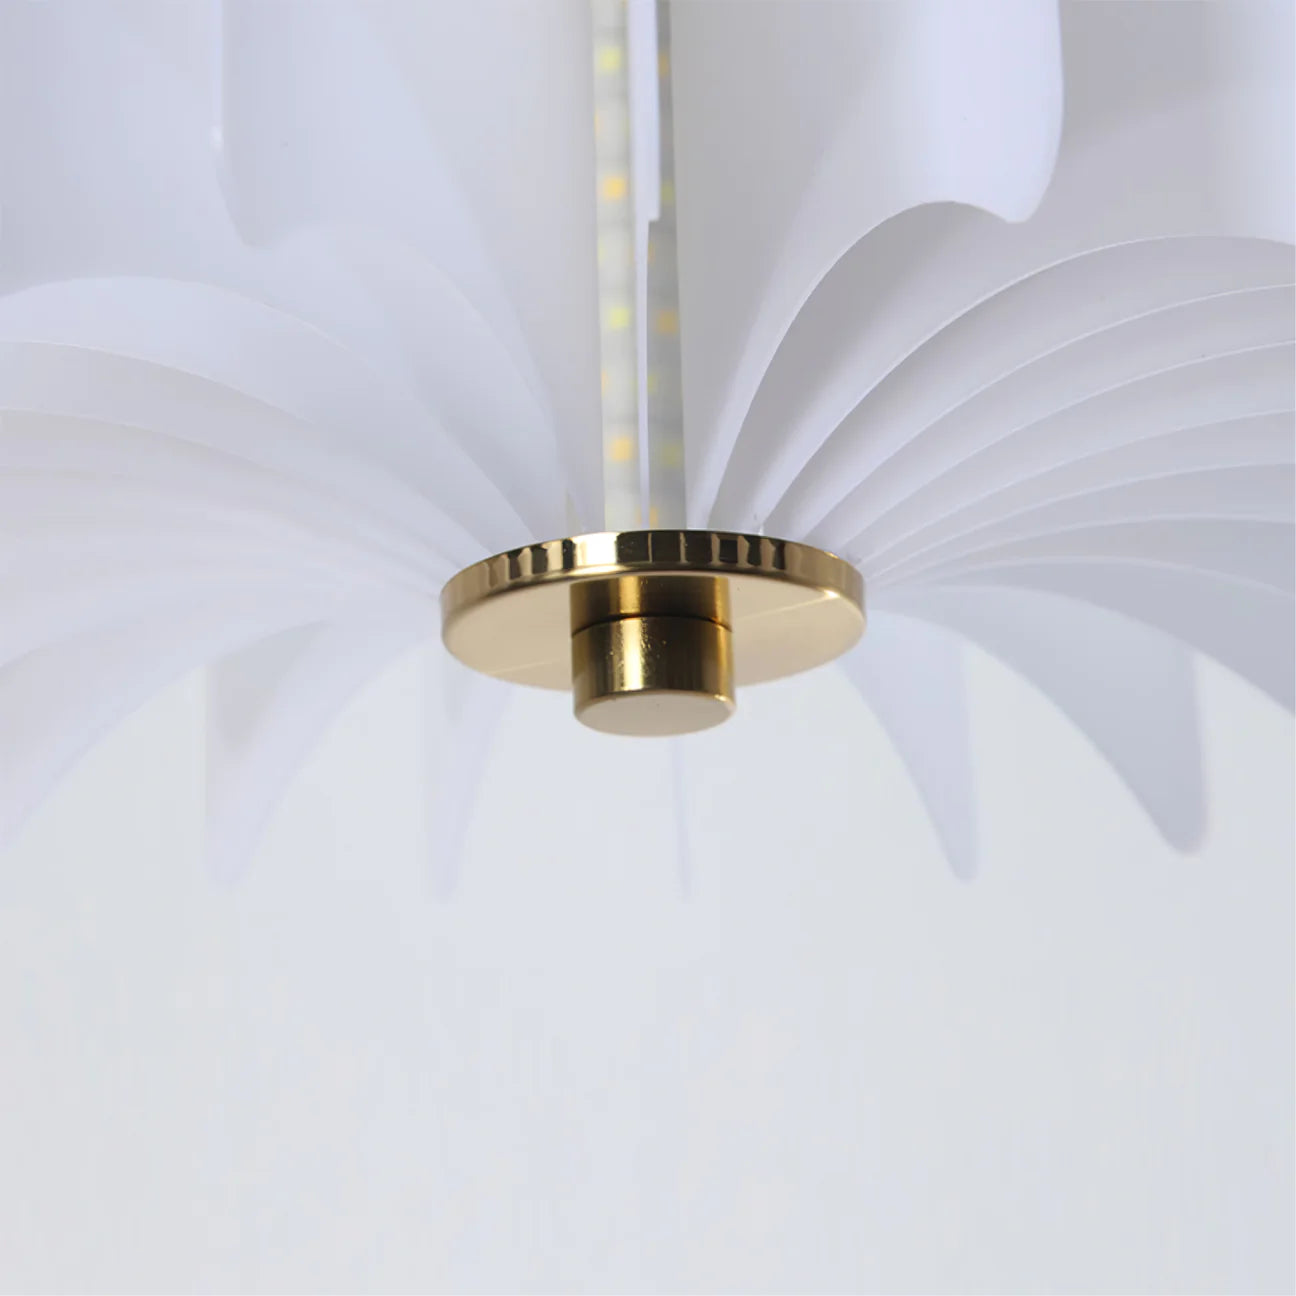 Alabaster Box Pendant Light Exquisite And Elegant Hanging Light